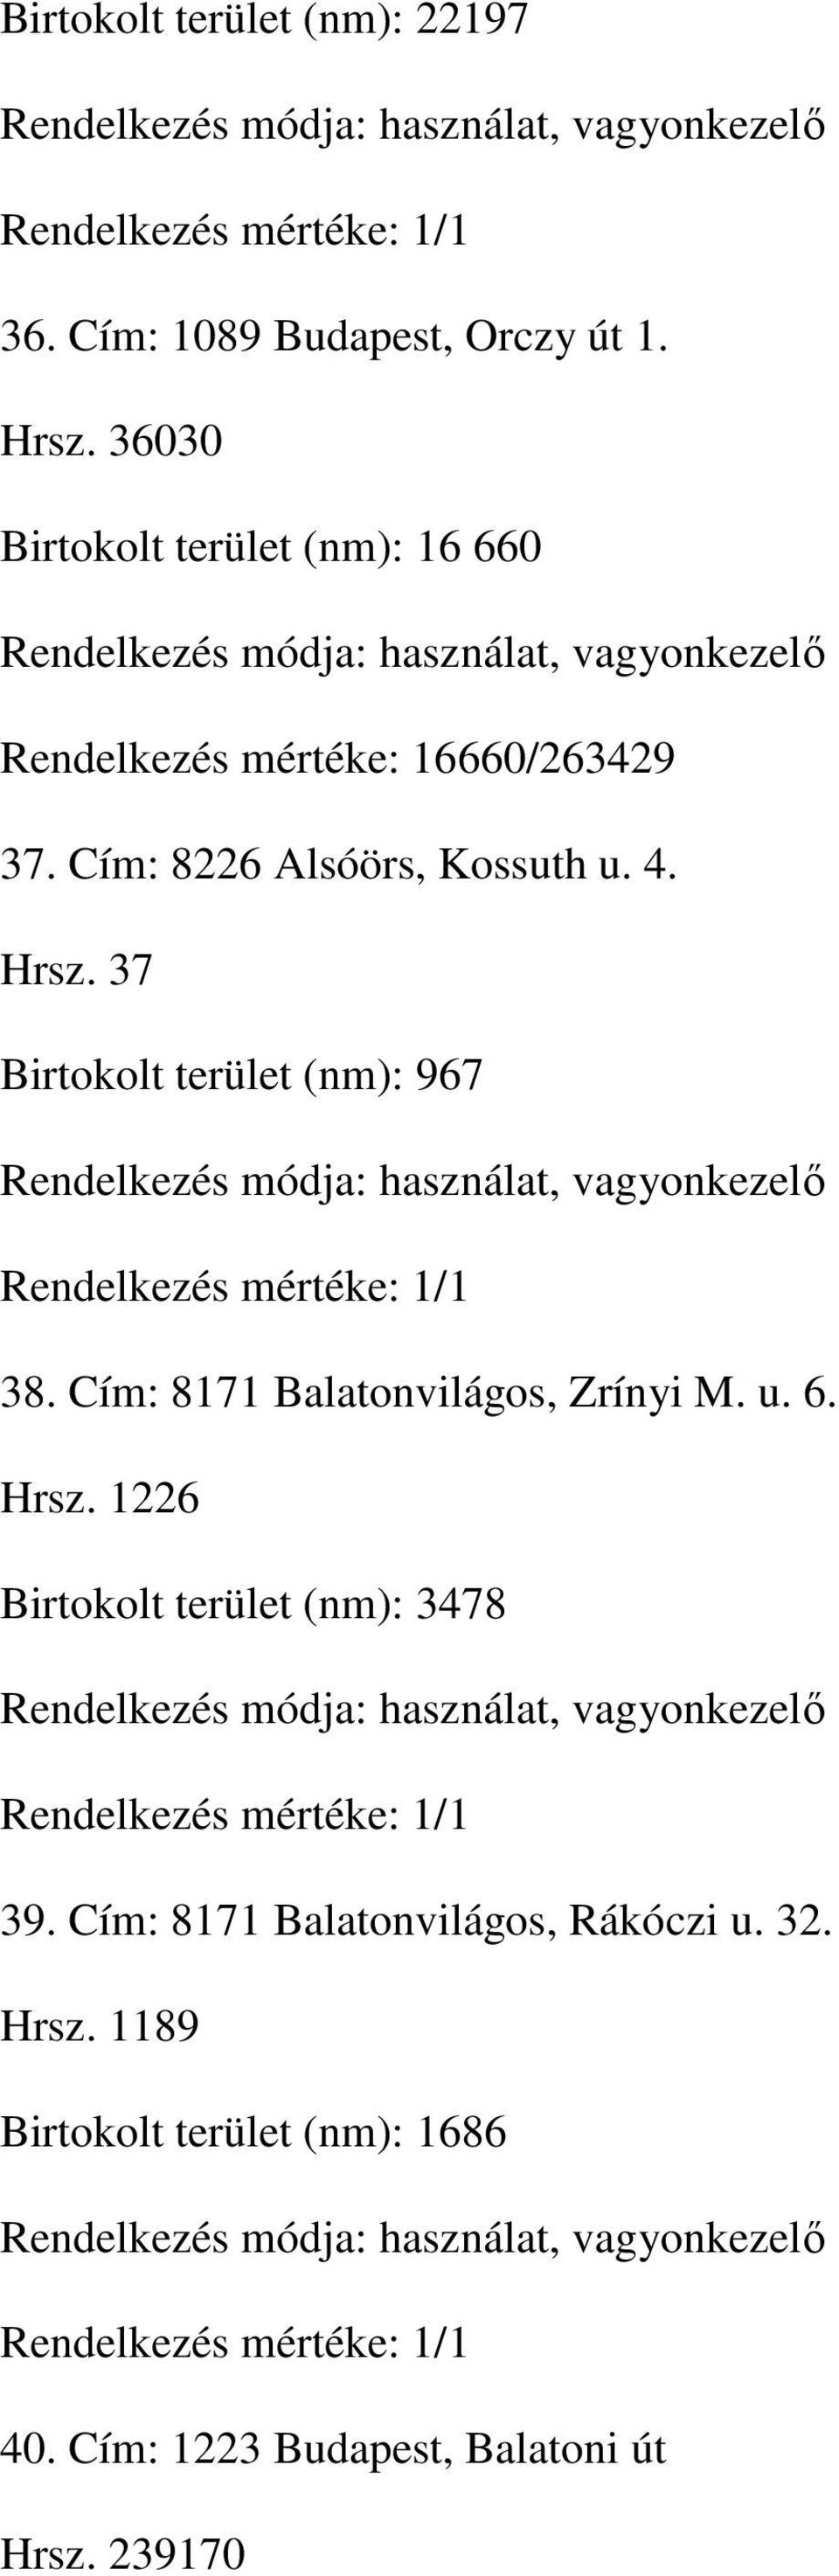 Hrsz. 37 Birtokolt terület (nm): 967 38. Cím: 8171 Balatonvilágos, Zrínyi M. u. 6. Hrsz.